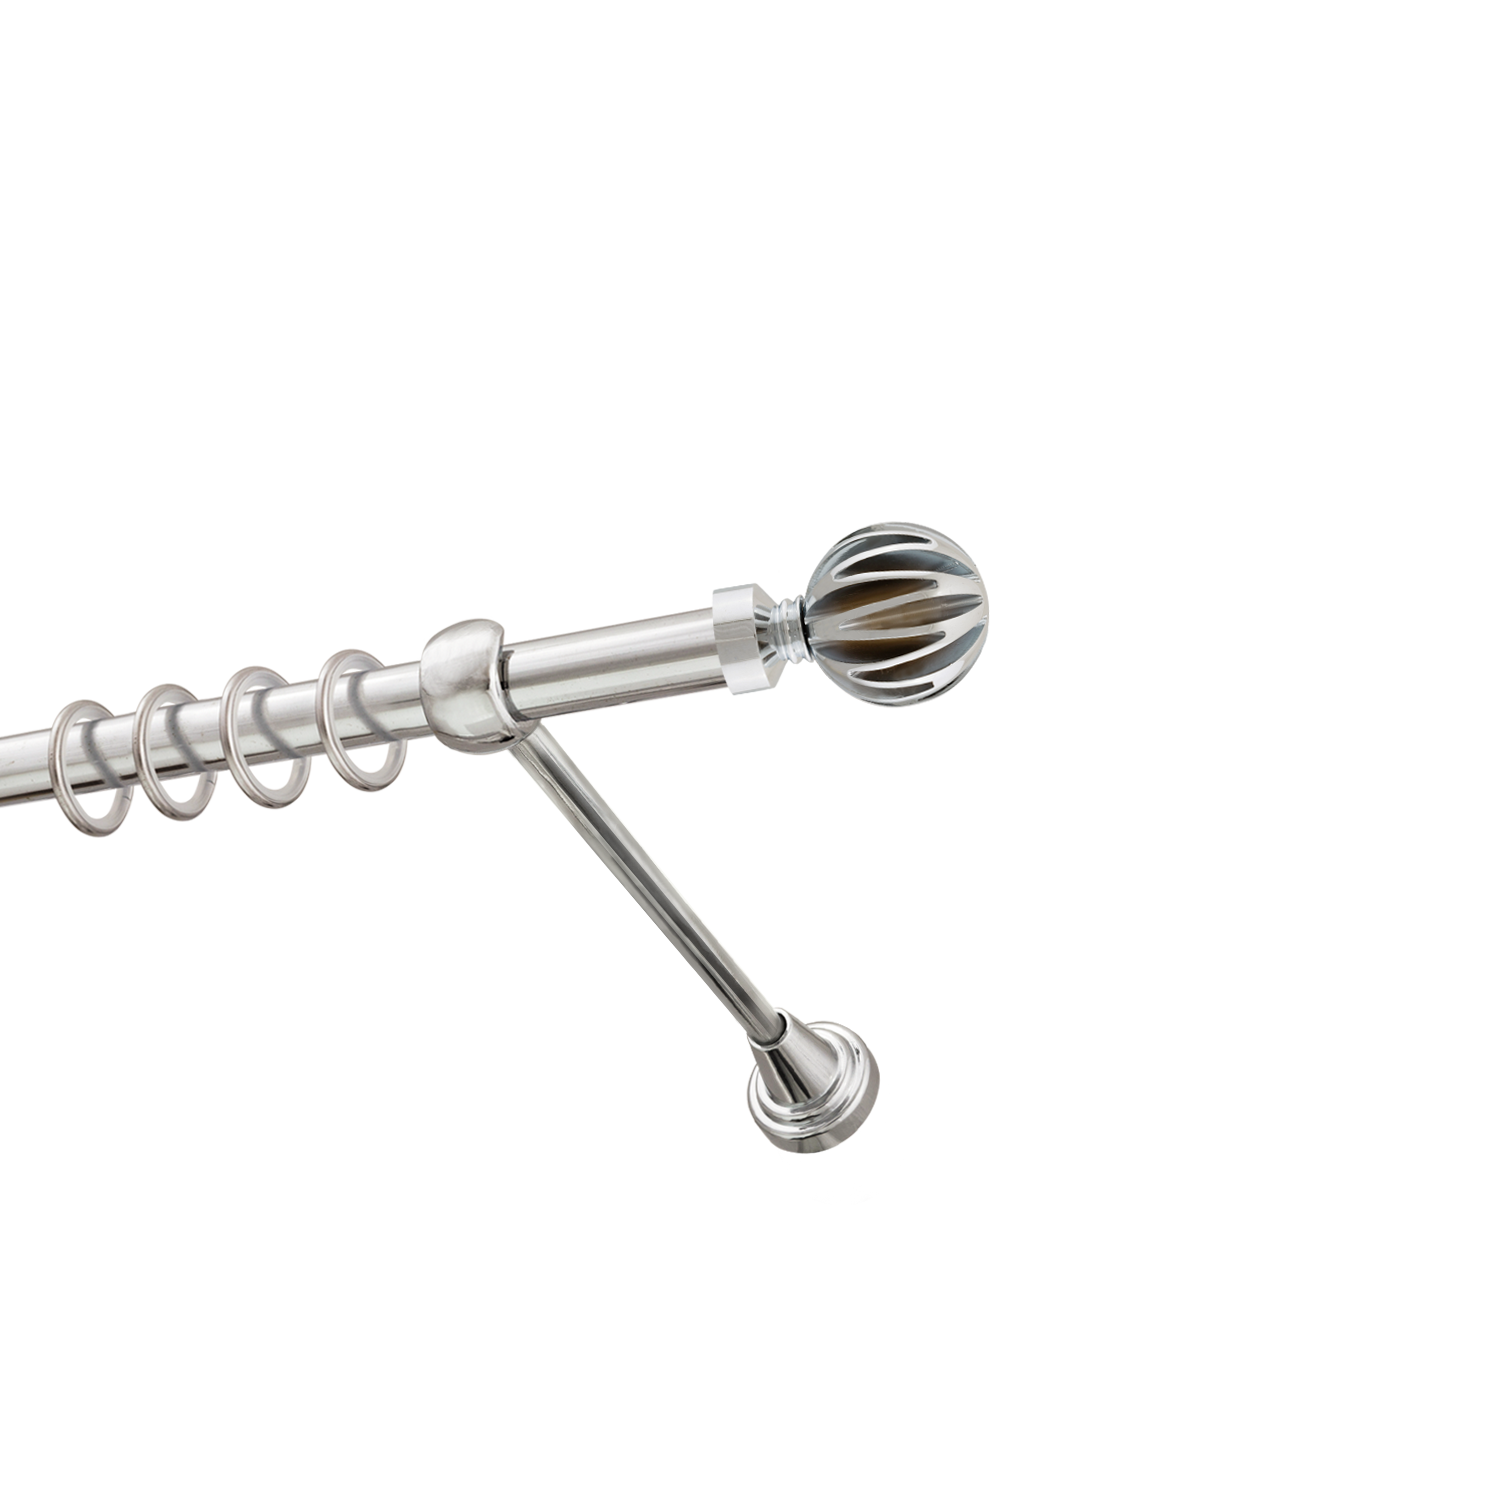 Металлический карниз для штор Шафран, однорядный 16 мм, серебро, гладкая штанга, длина 200 см - фото Wikidecor.ru